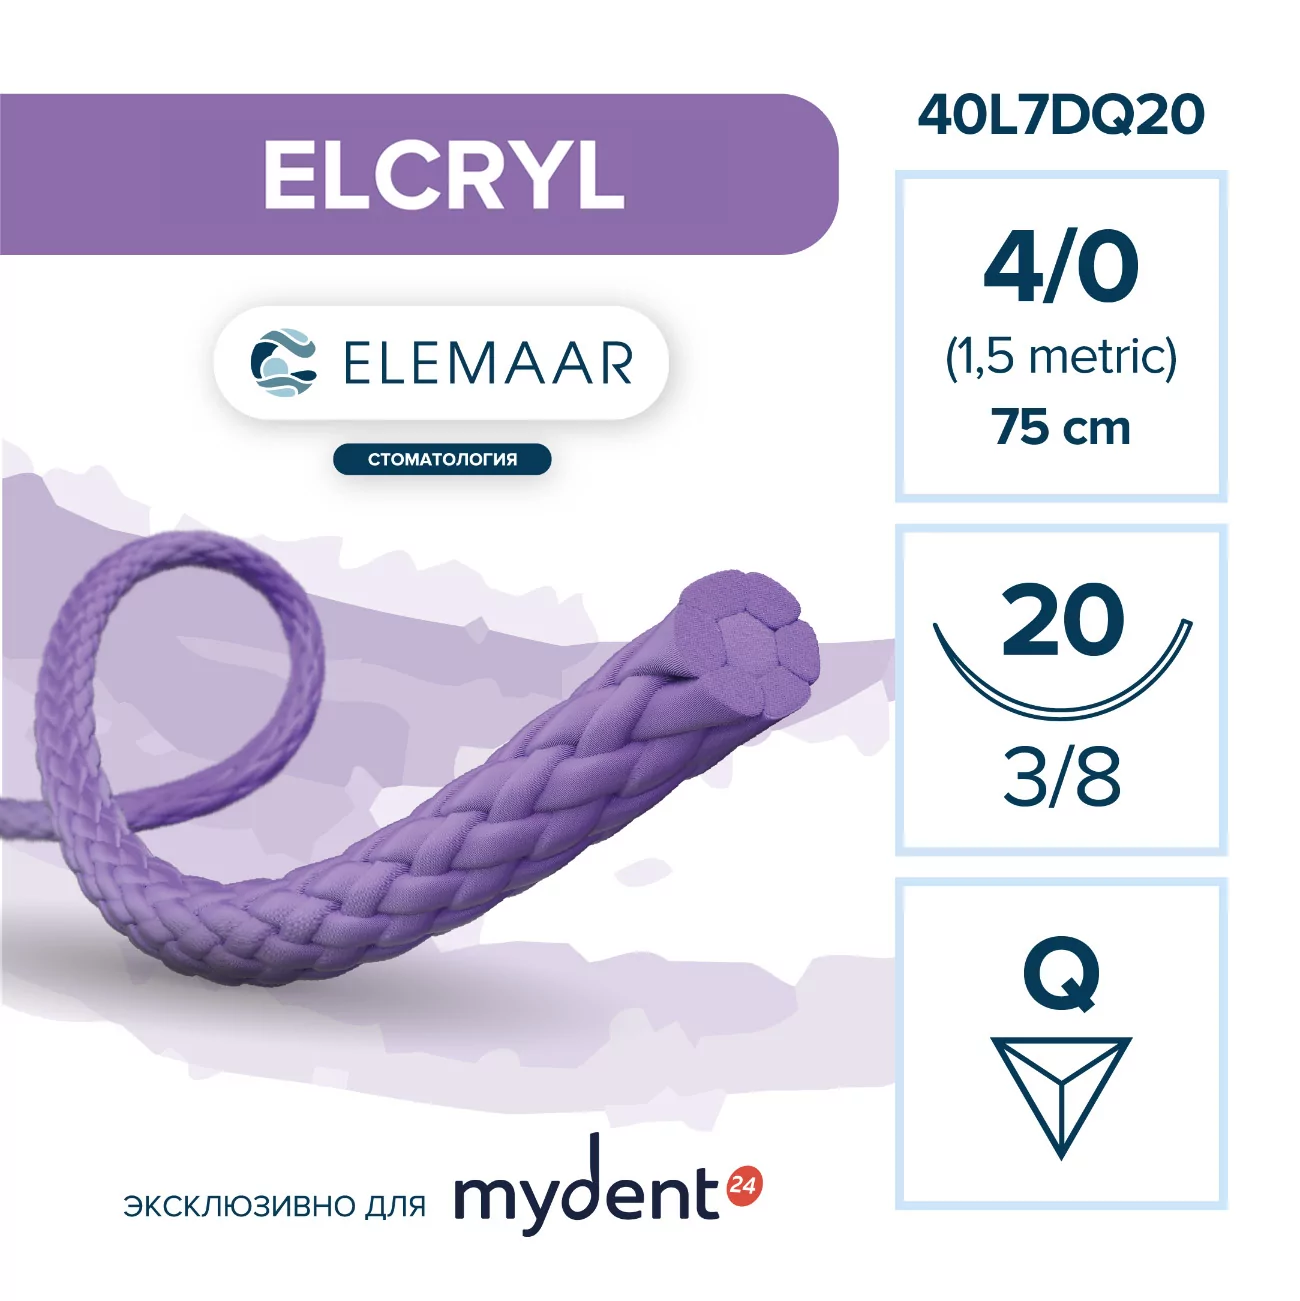 Шовный материал ELCRYL 4/0 (12 шт, 75 см, 3/8, 20 мм, обратно-режущая)